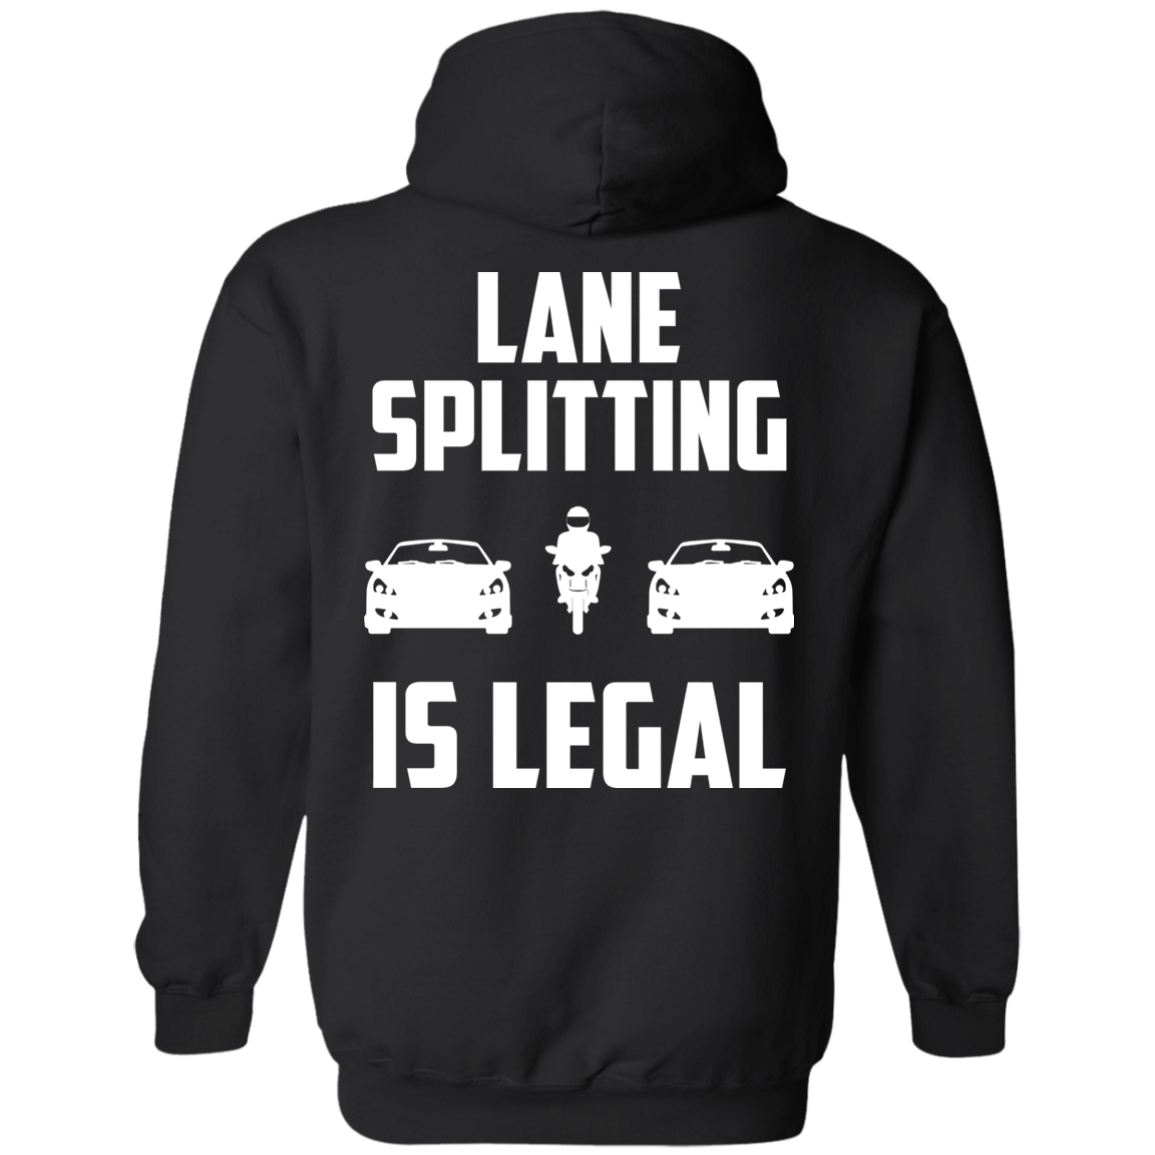 Lane Splitting is Legal Hoodie Black Small Medium Large X-Large XX-Large XXX-Large 4XL 5XL 6XL